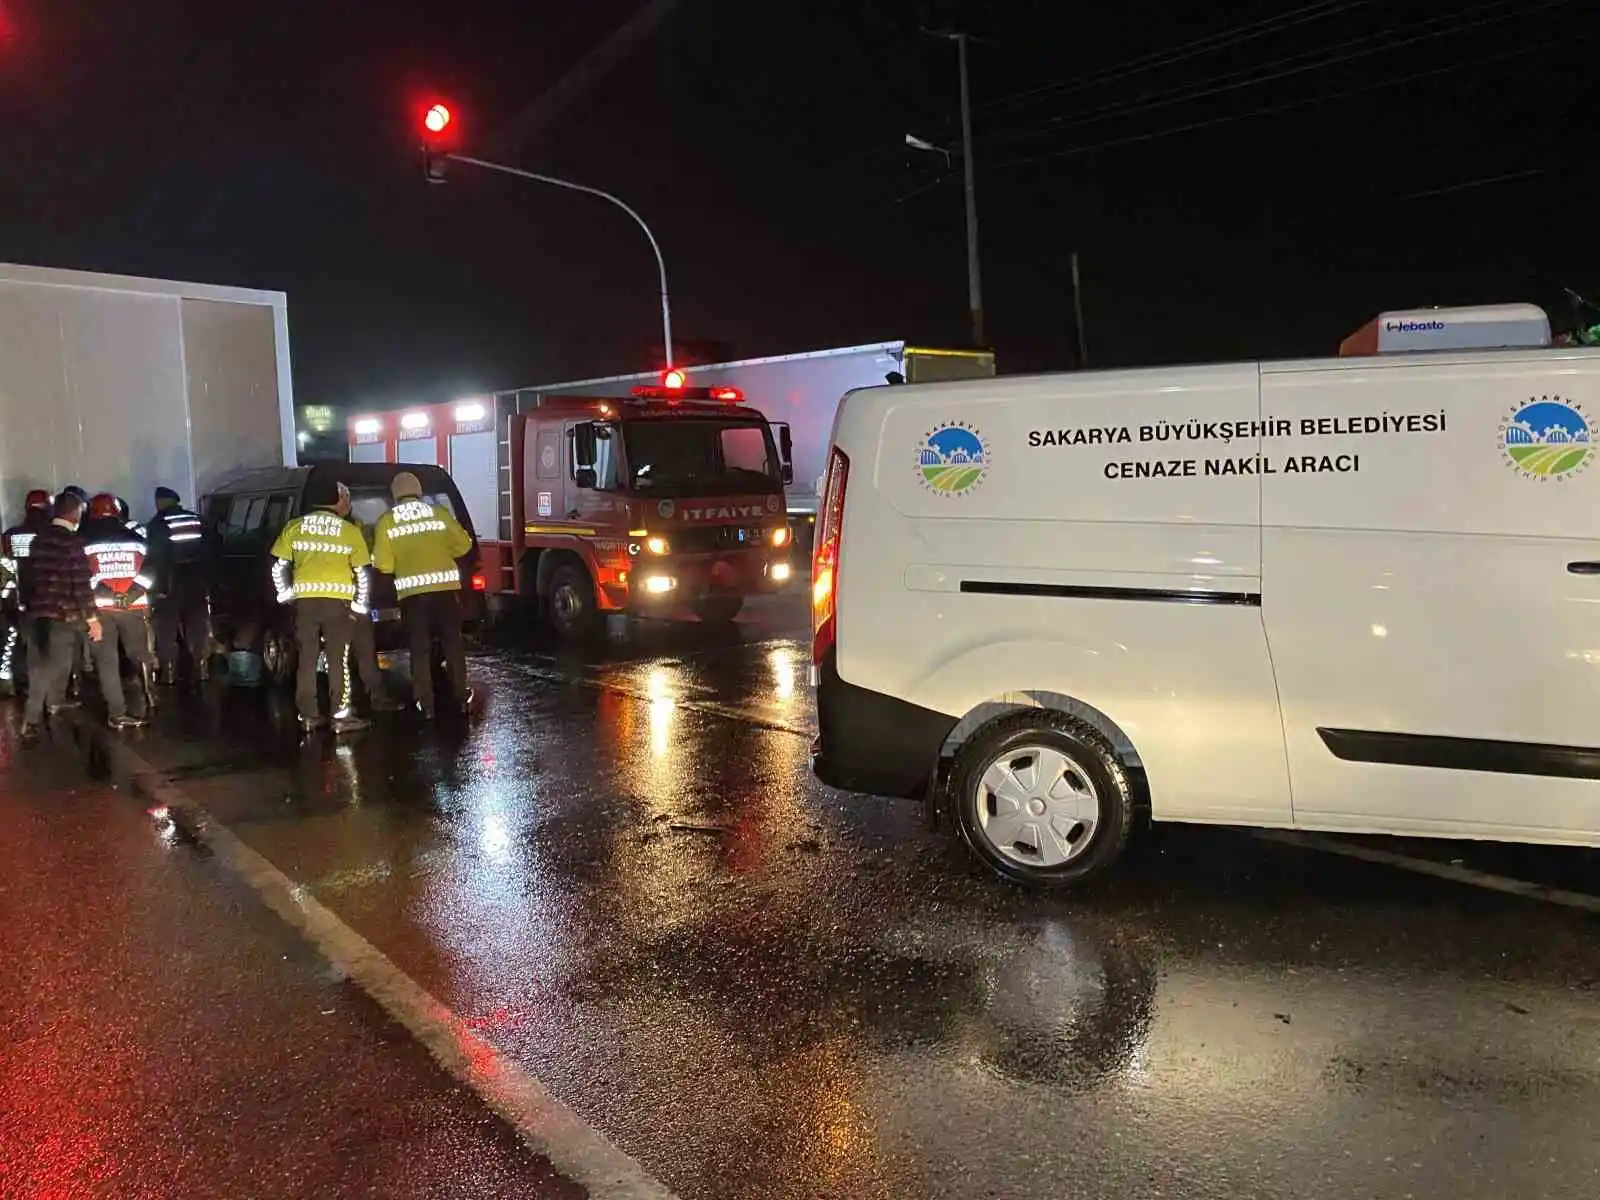 Minibüs, deprem bölgesine konteyner götüren tıra ok gibi saplandı: 1 ölü, 2 yaralı
